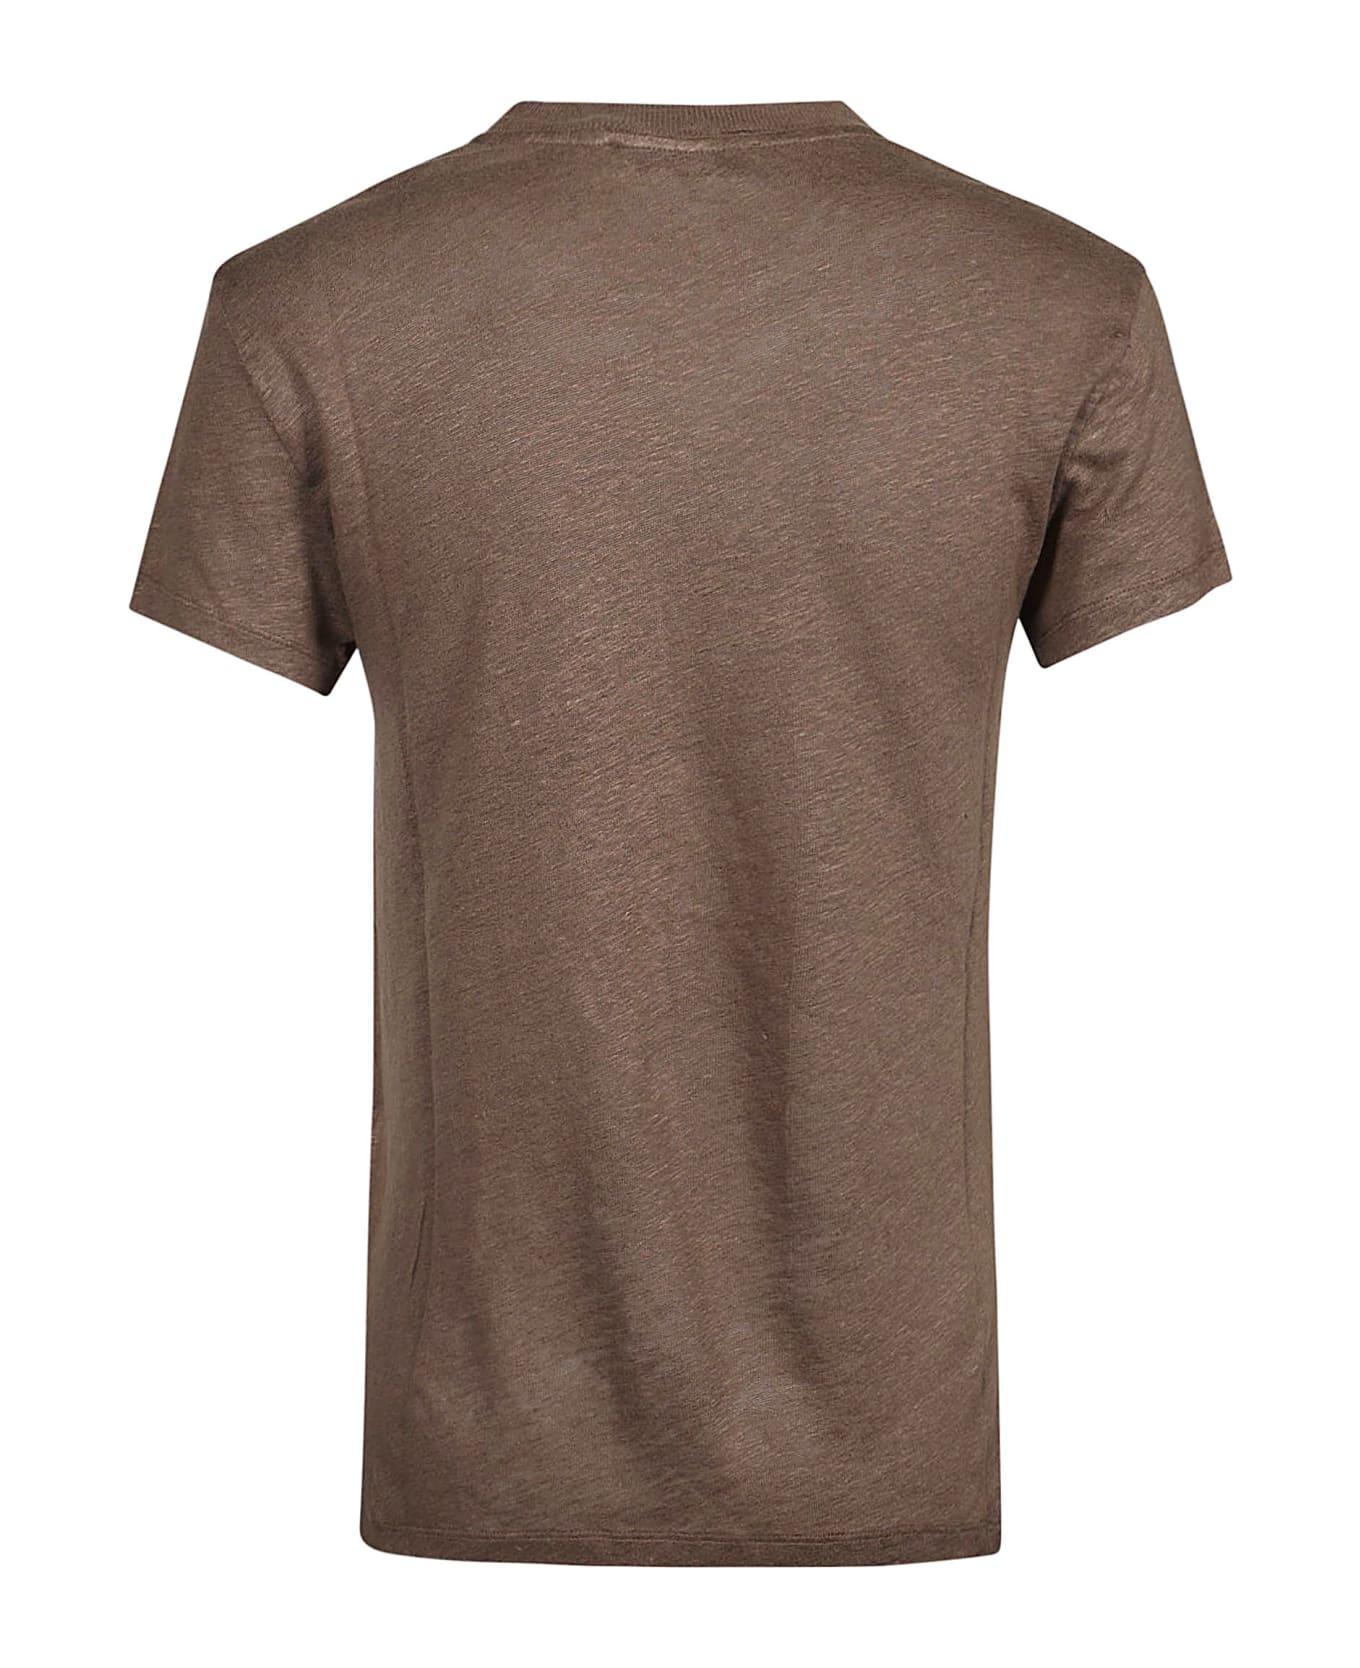 IRO Third T-shirt - Brown